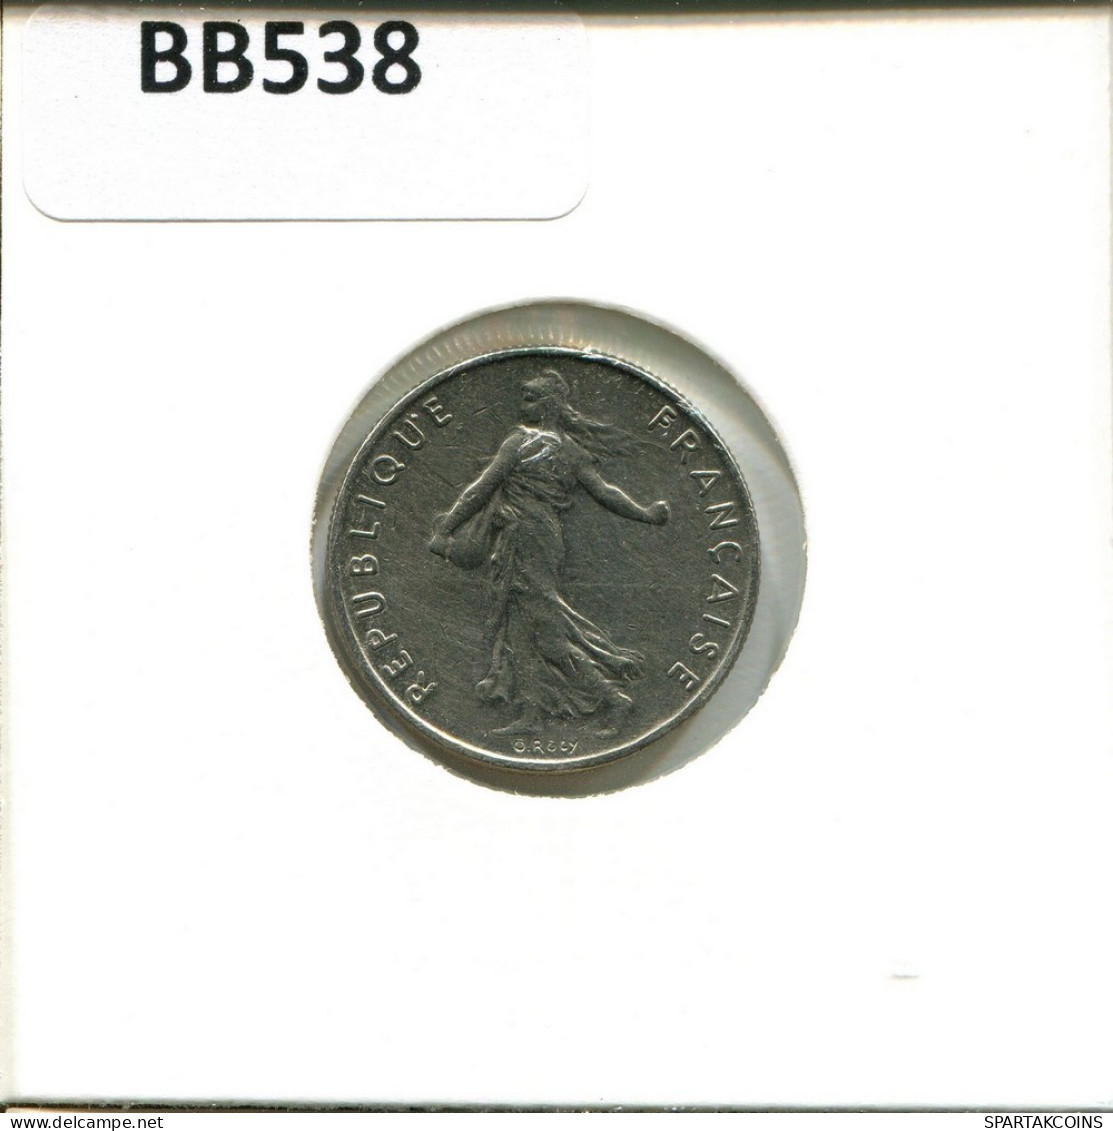 1/2 FRANC 1993 FRANCIA FRANCE Moneda #BB538.E.A - 1/2 Franc